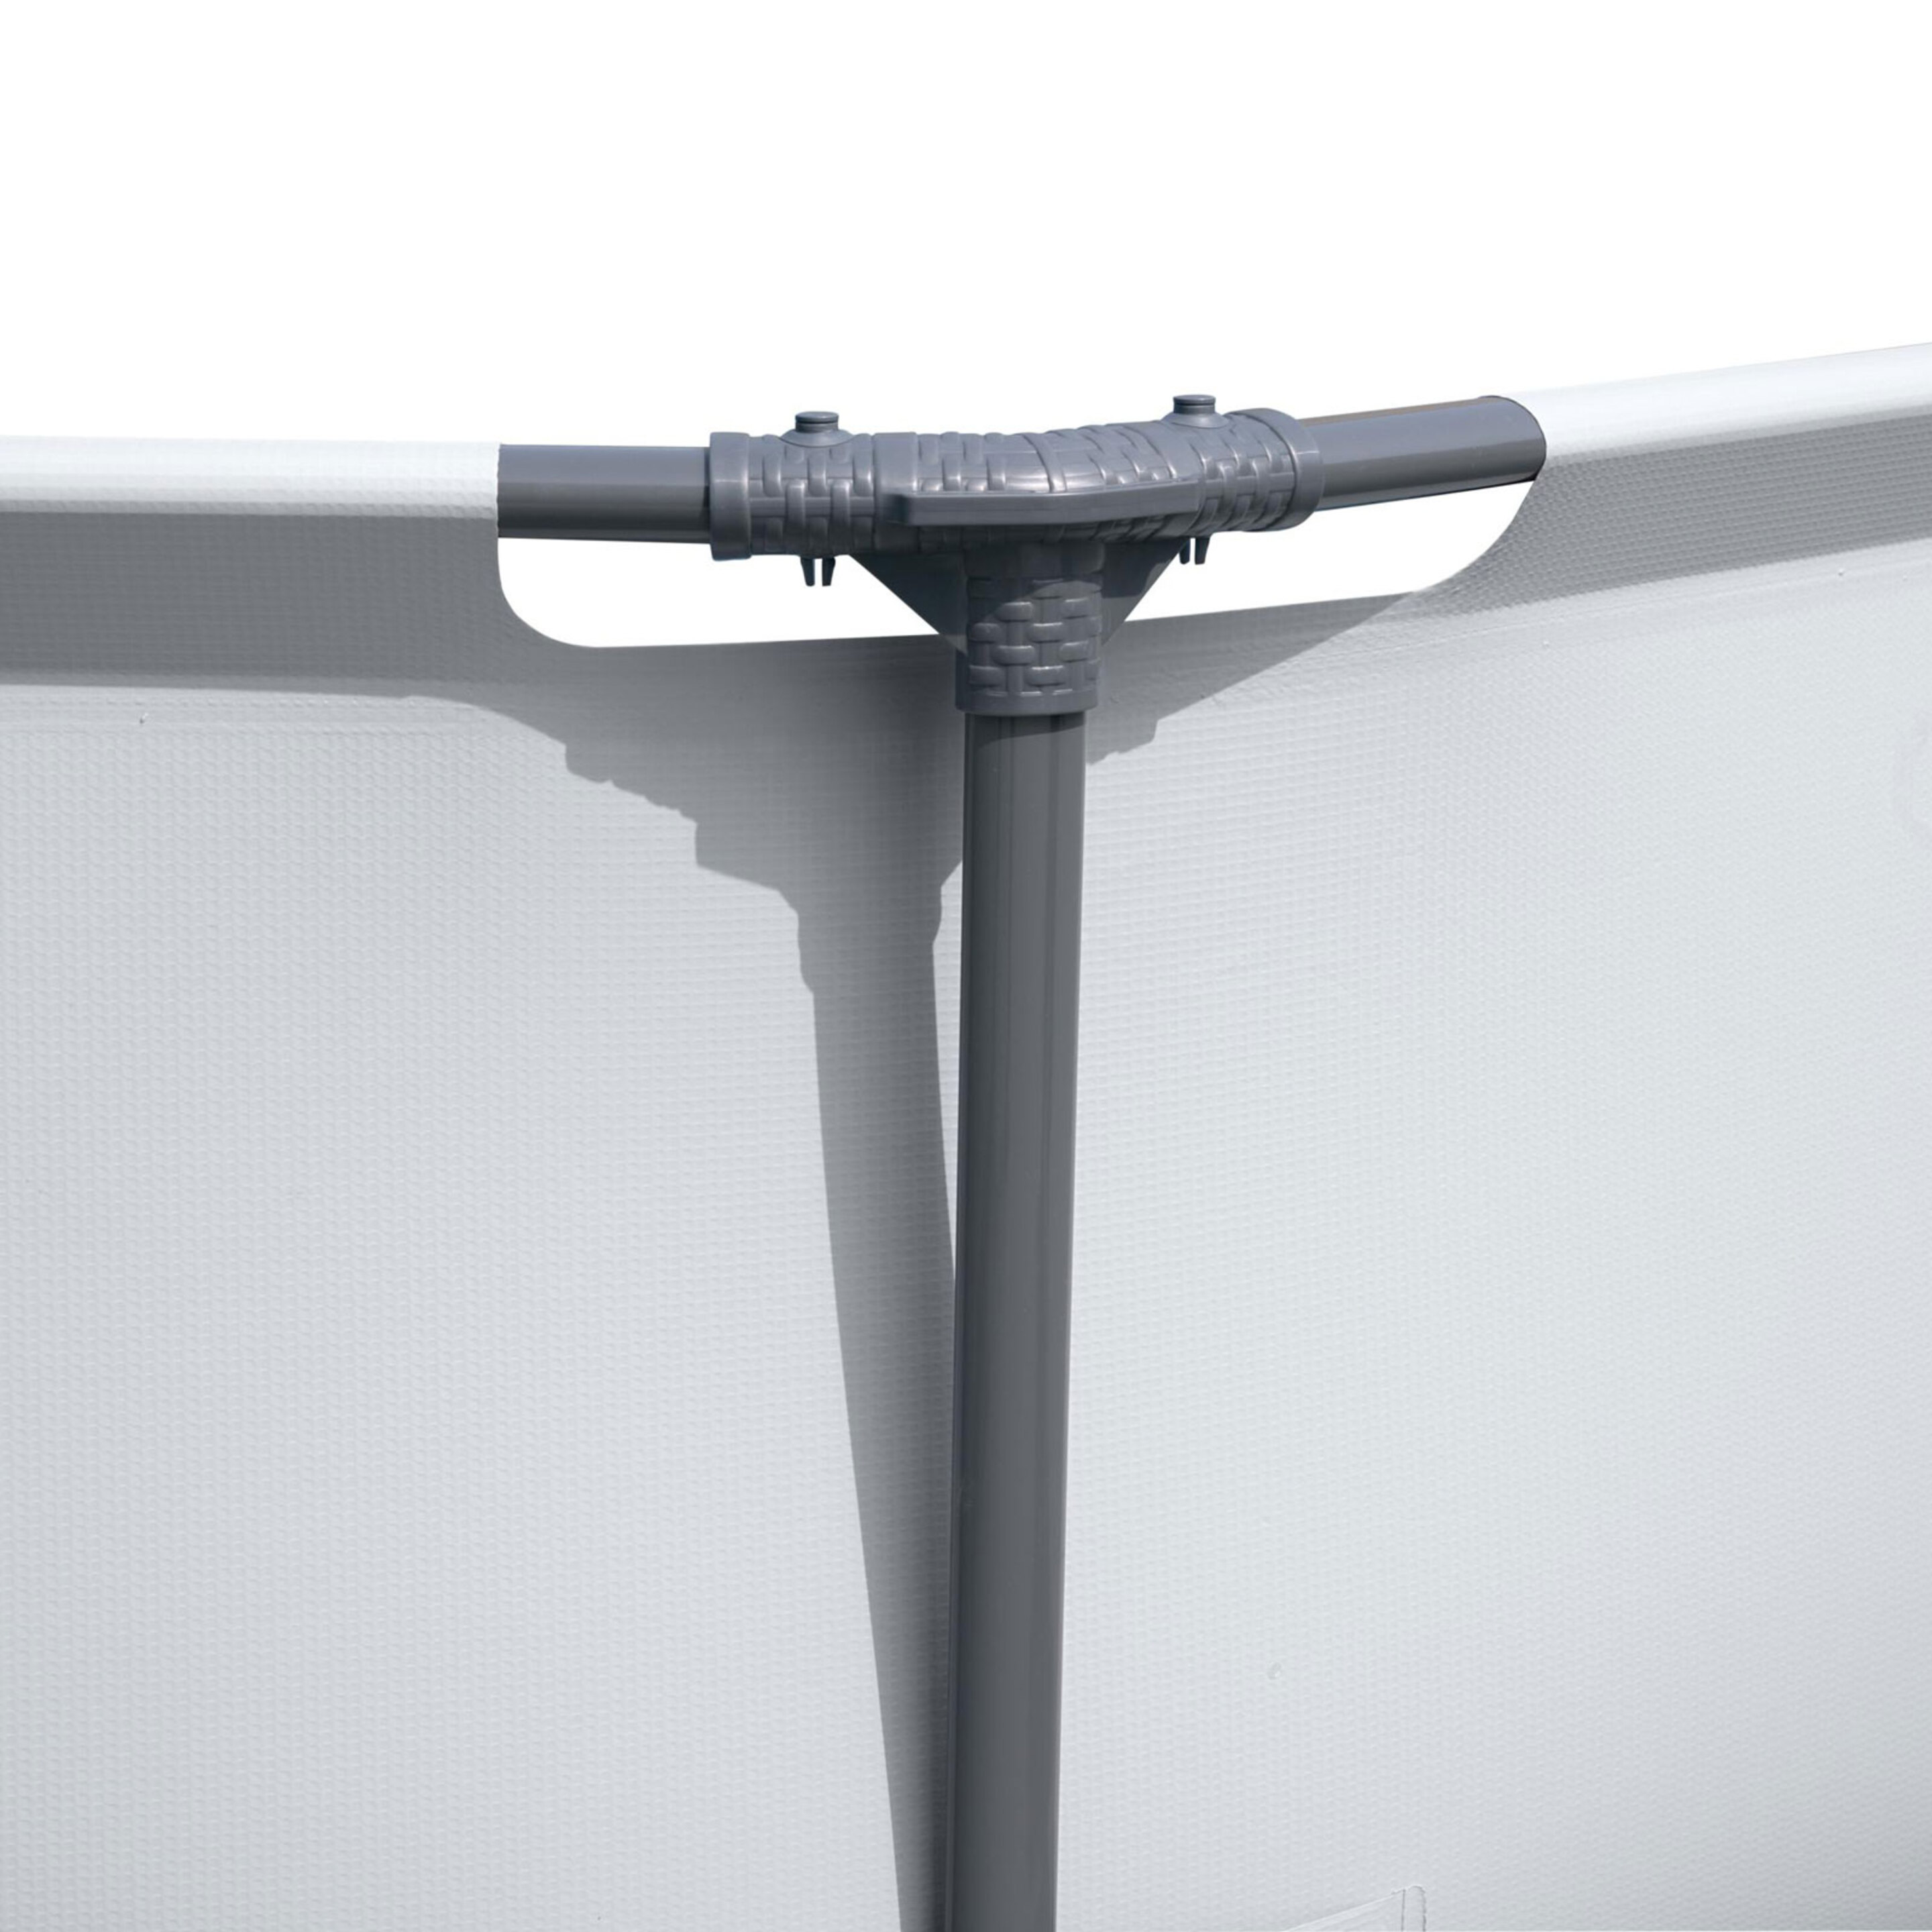 Piscina Desmontable Tubular Bestway Steel Pro Max 305x76 Cm